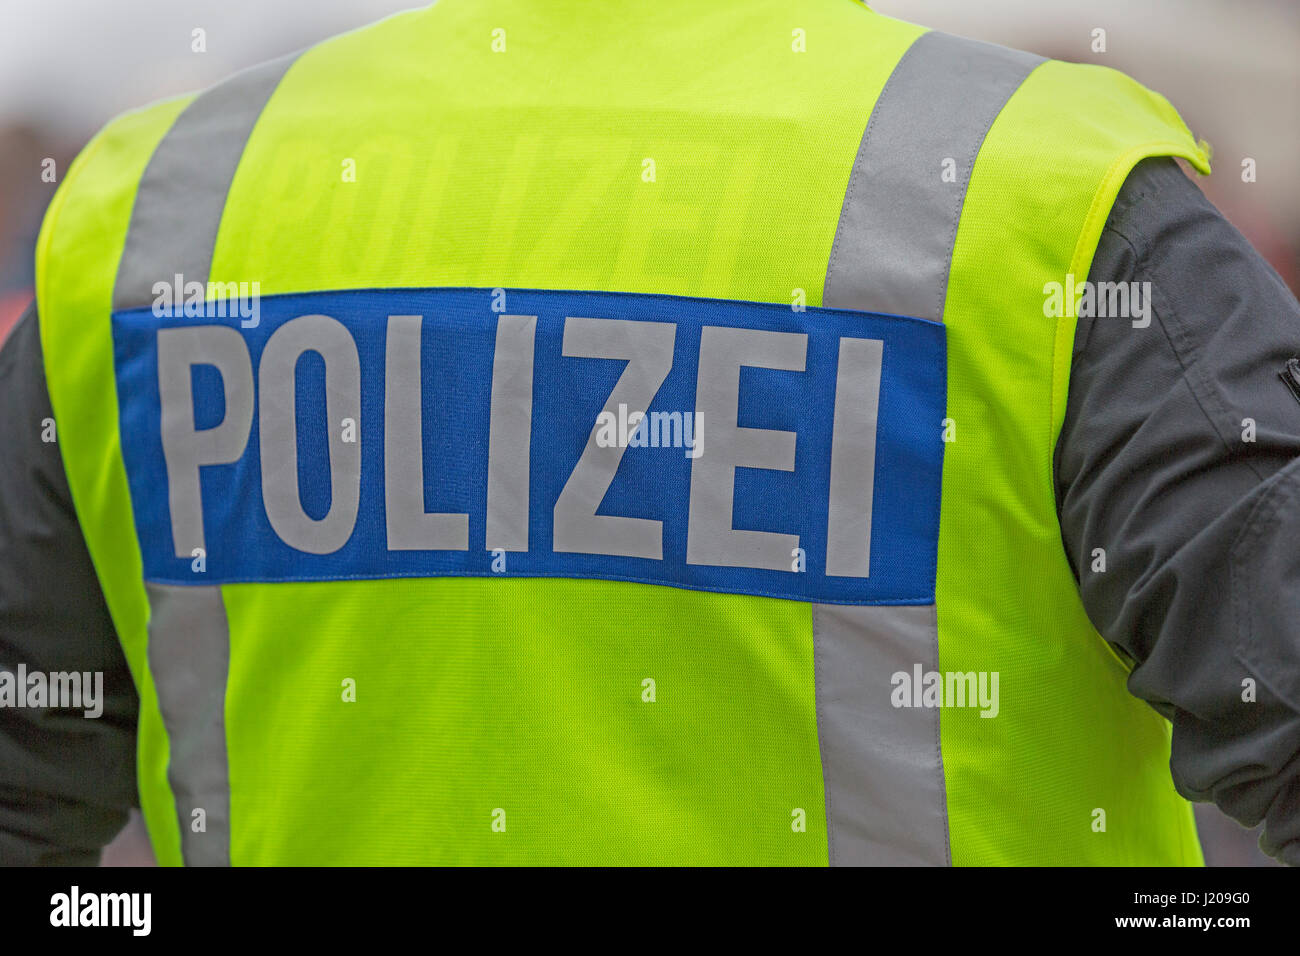 Polizist mit reflektierenden Westen Inschrift Polizei, Hamburg, Deutschland Stockfoto